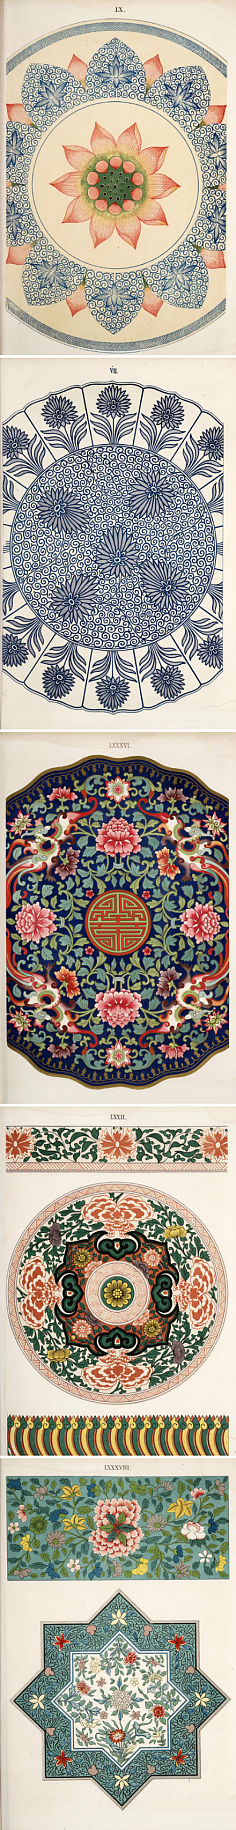 微笑拉拉的小屋采集到中国传统装饰图案